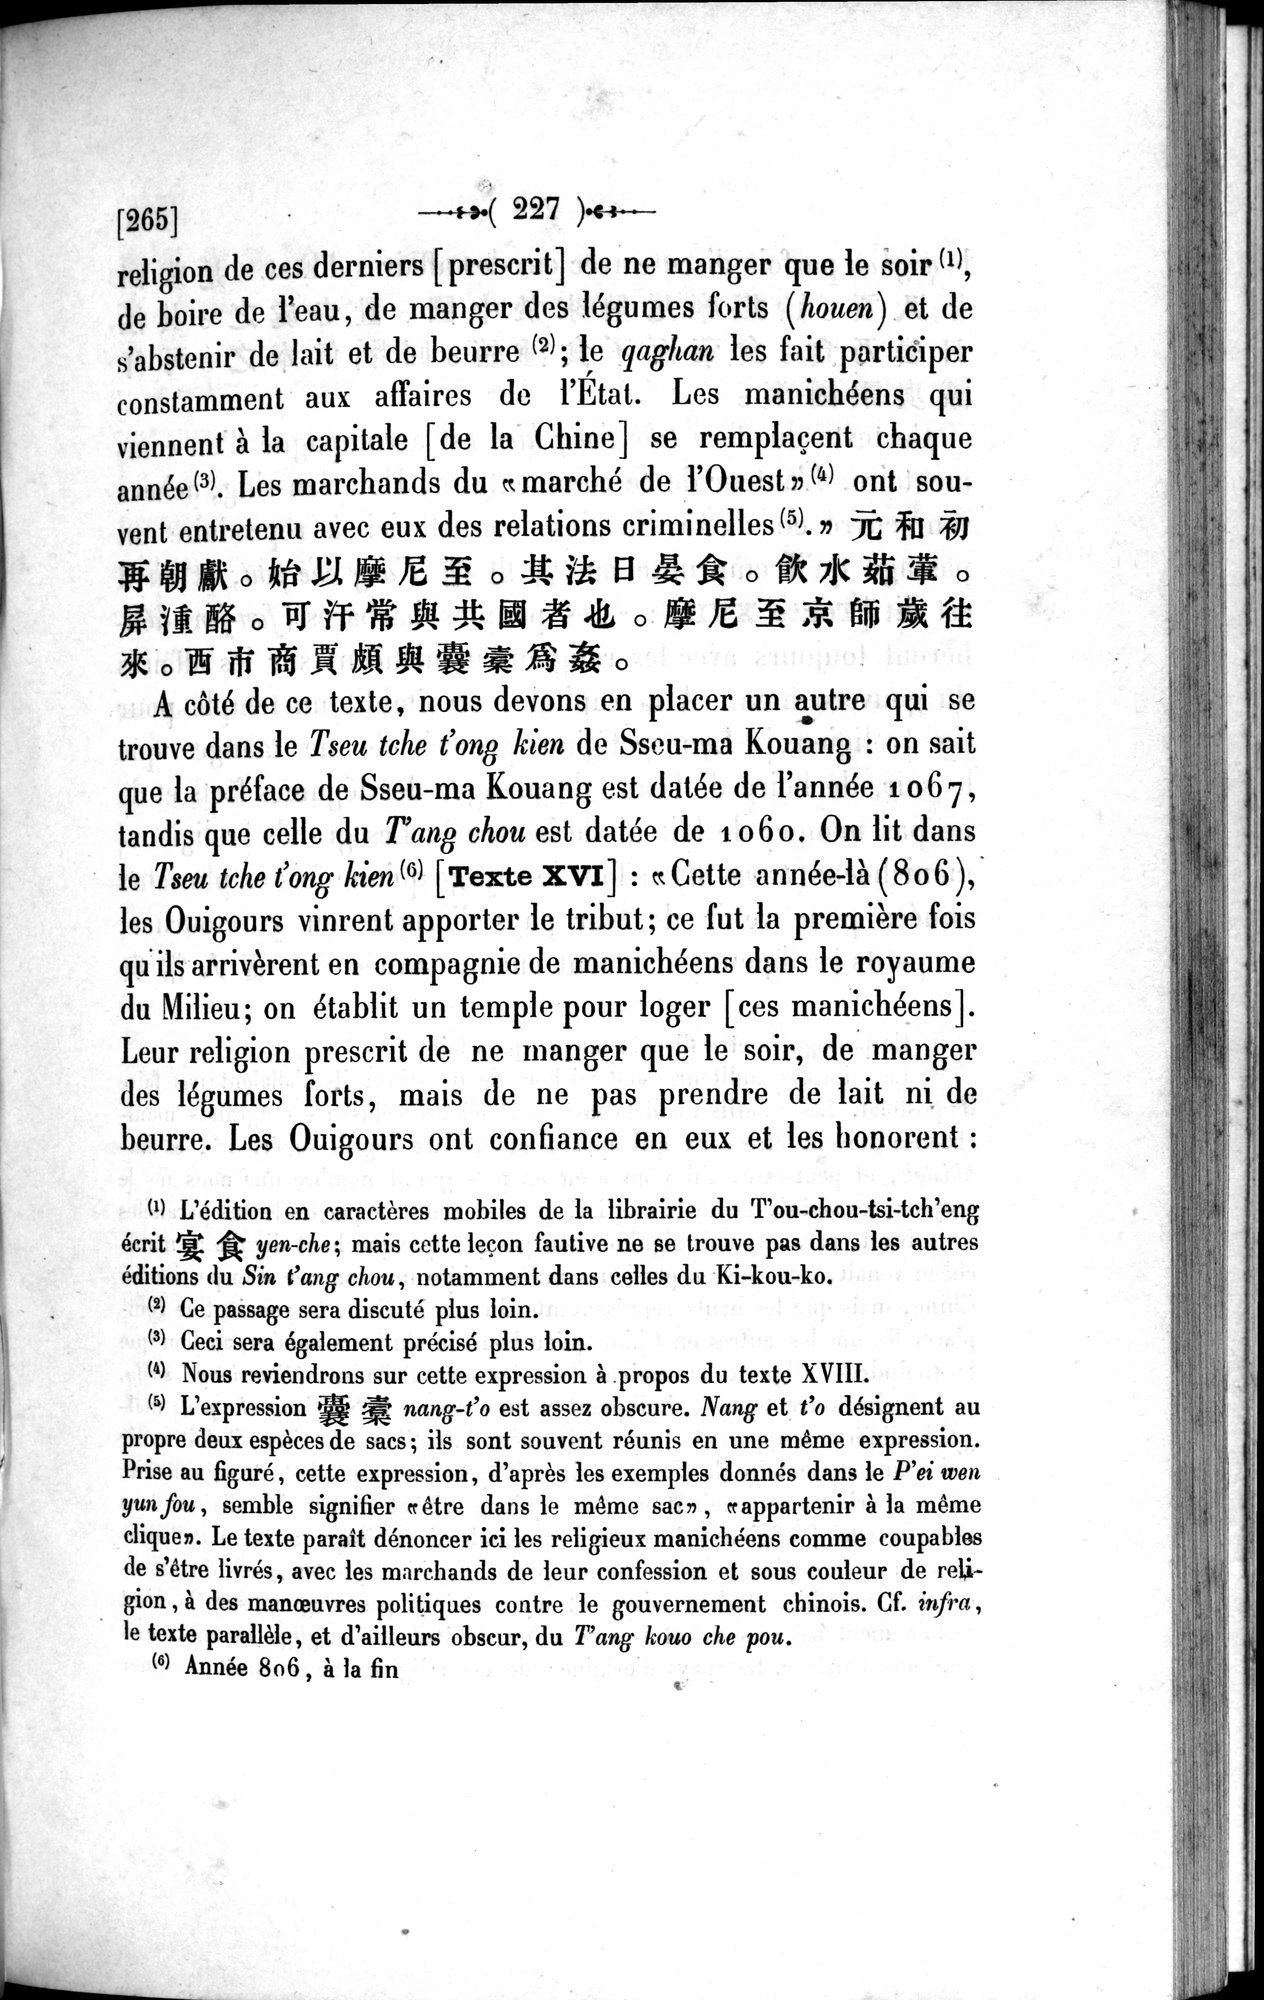 Un traité manichéen retrouvé en Chine : vol.1 / Page 237 (Grayscale High Resolution Image)